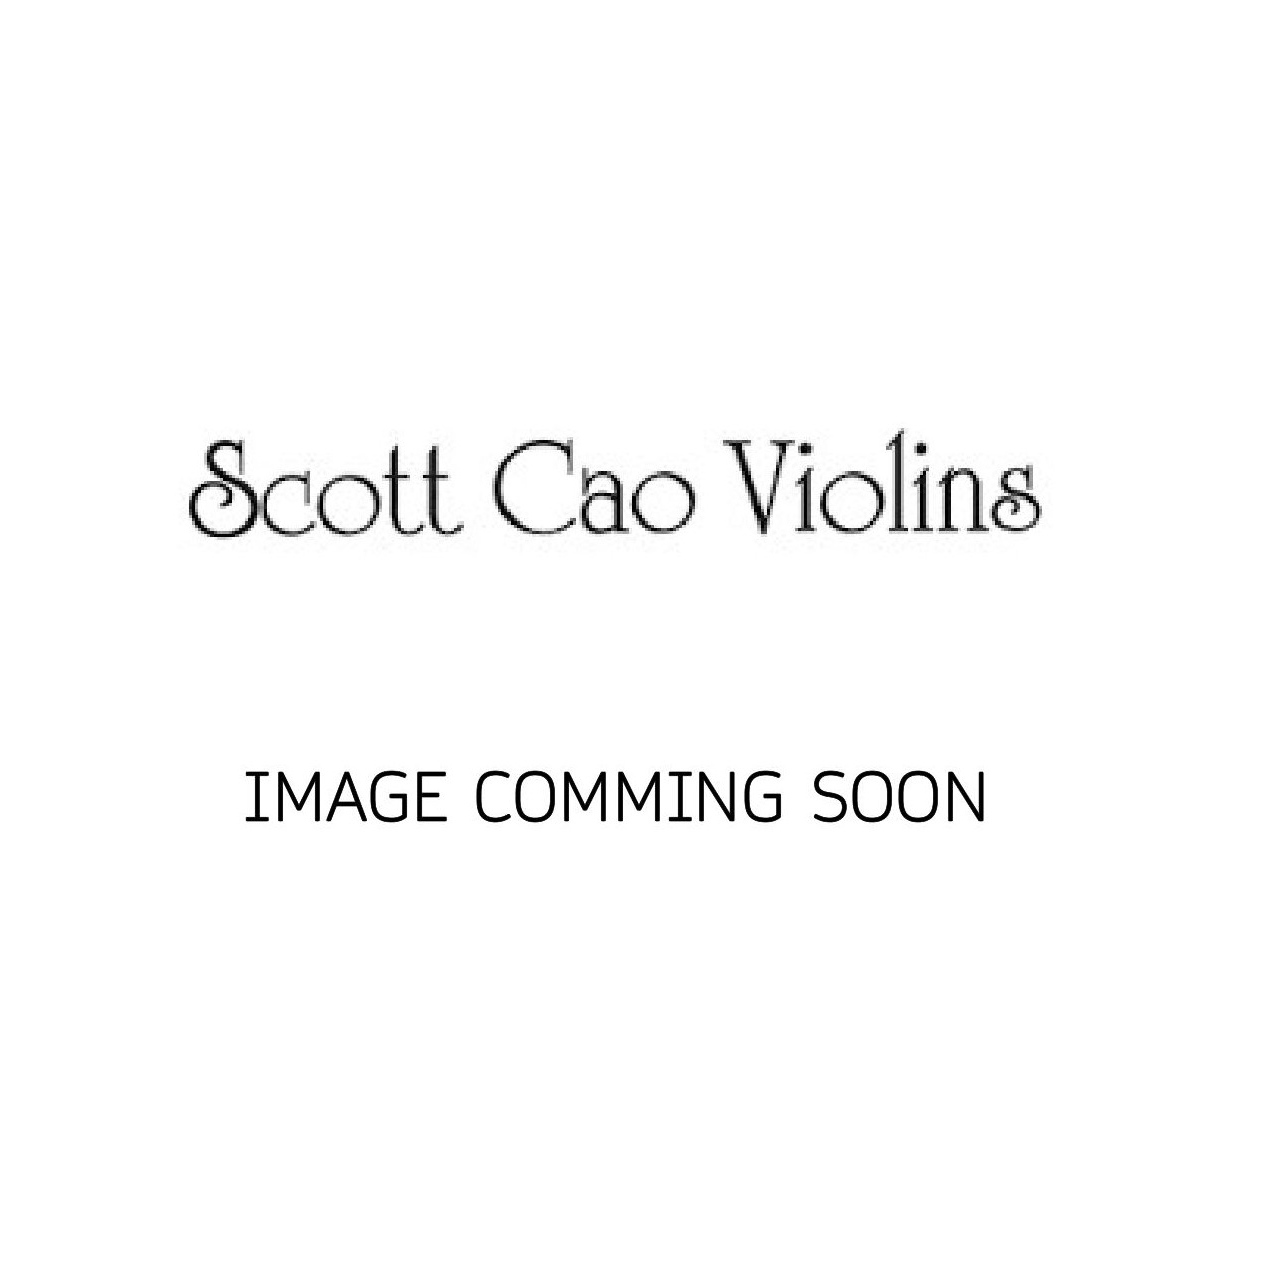 Scott Cao Viola 35,5 EU/EU